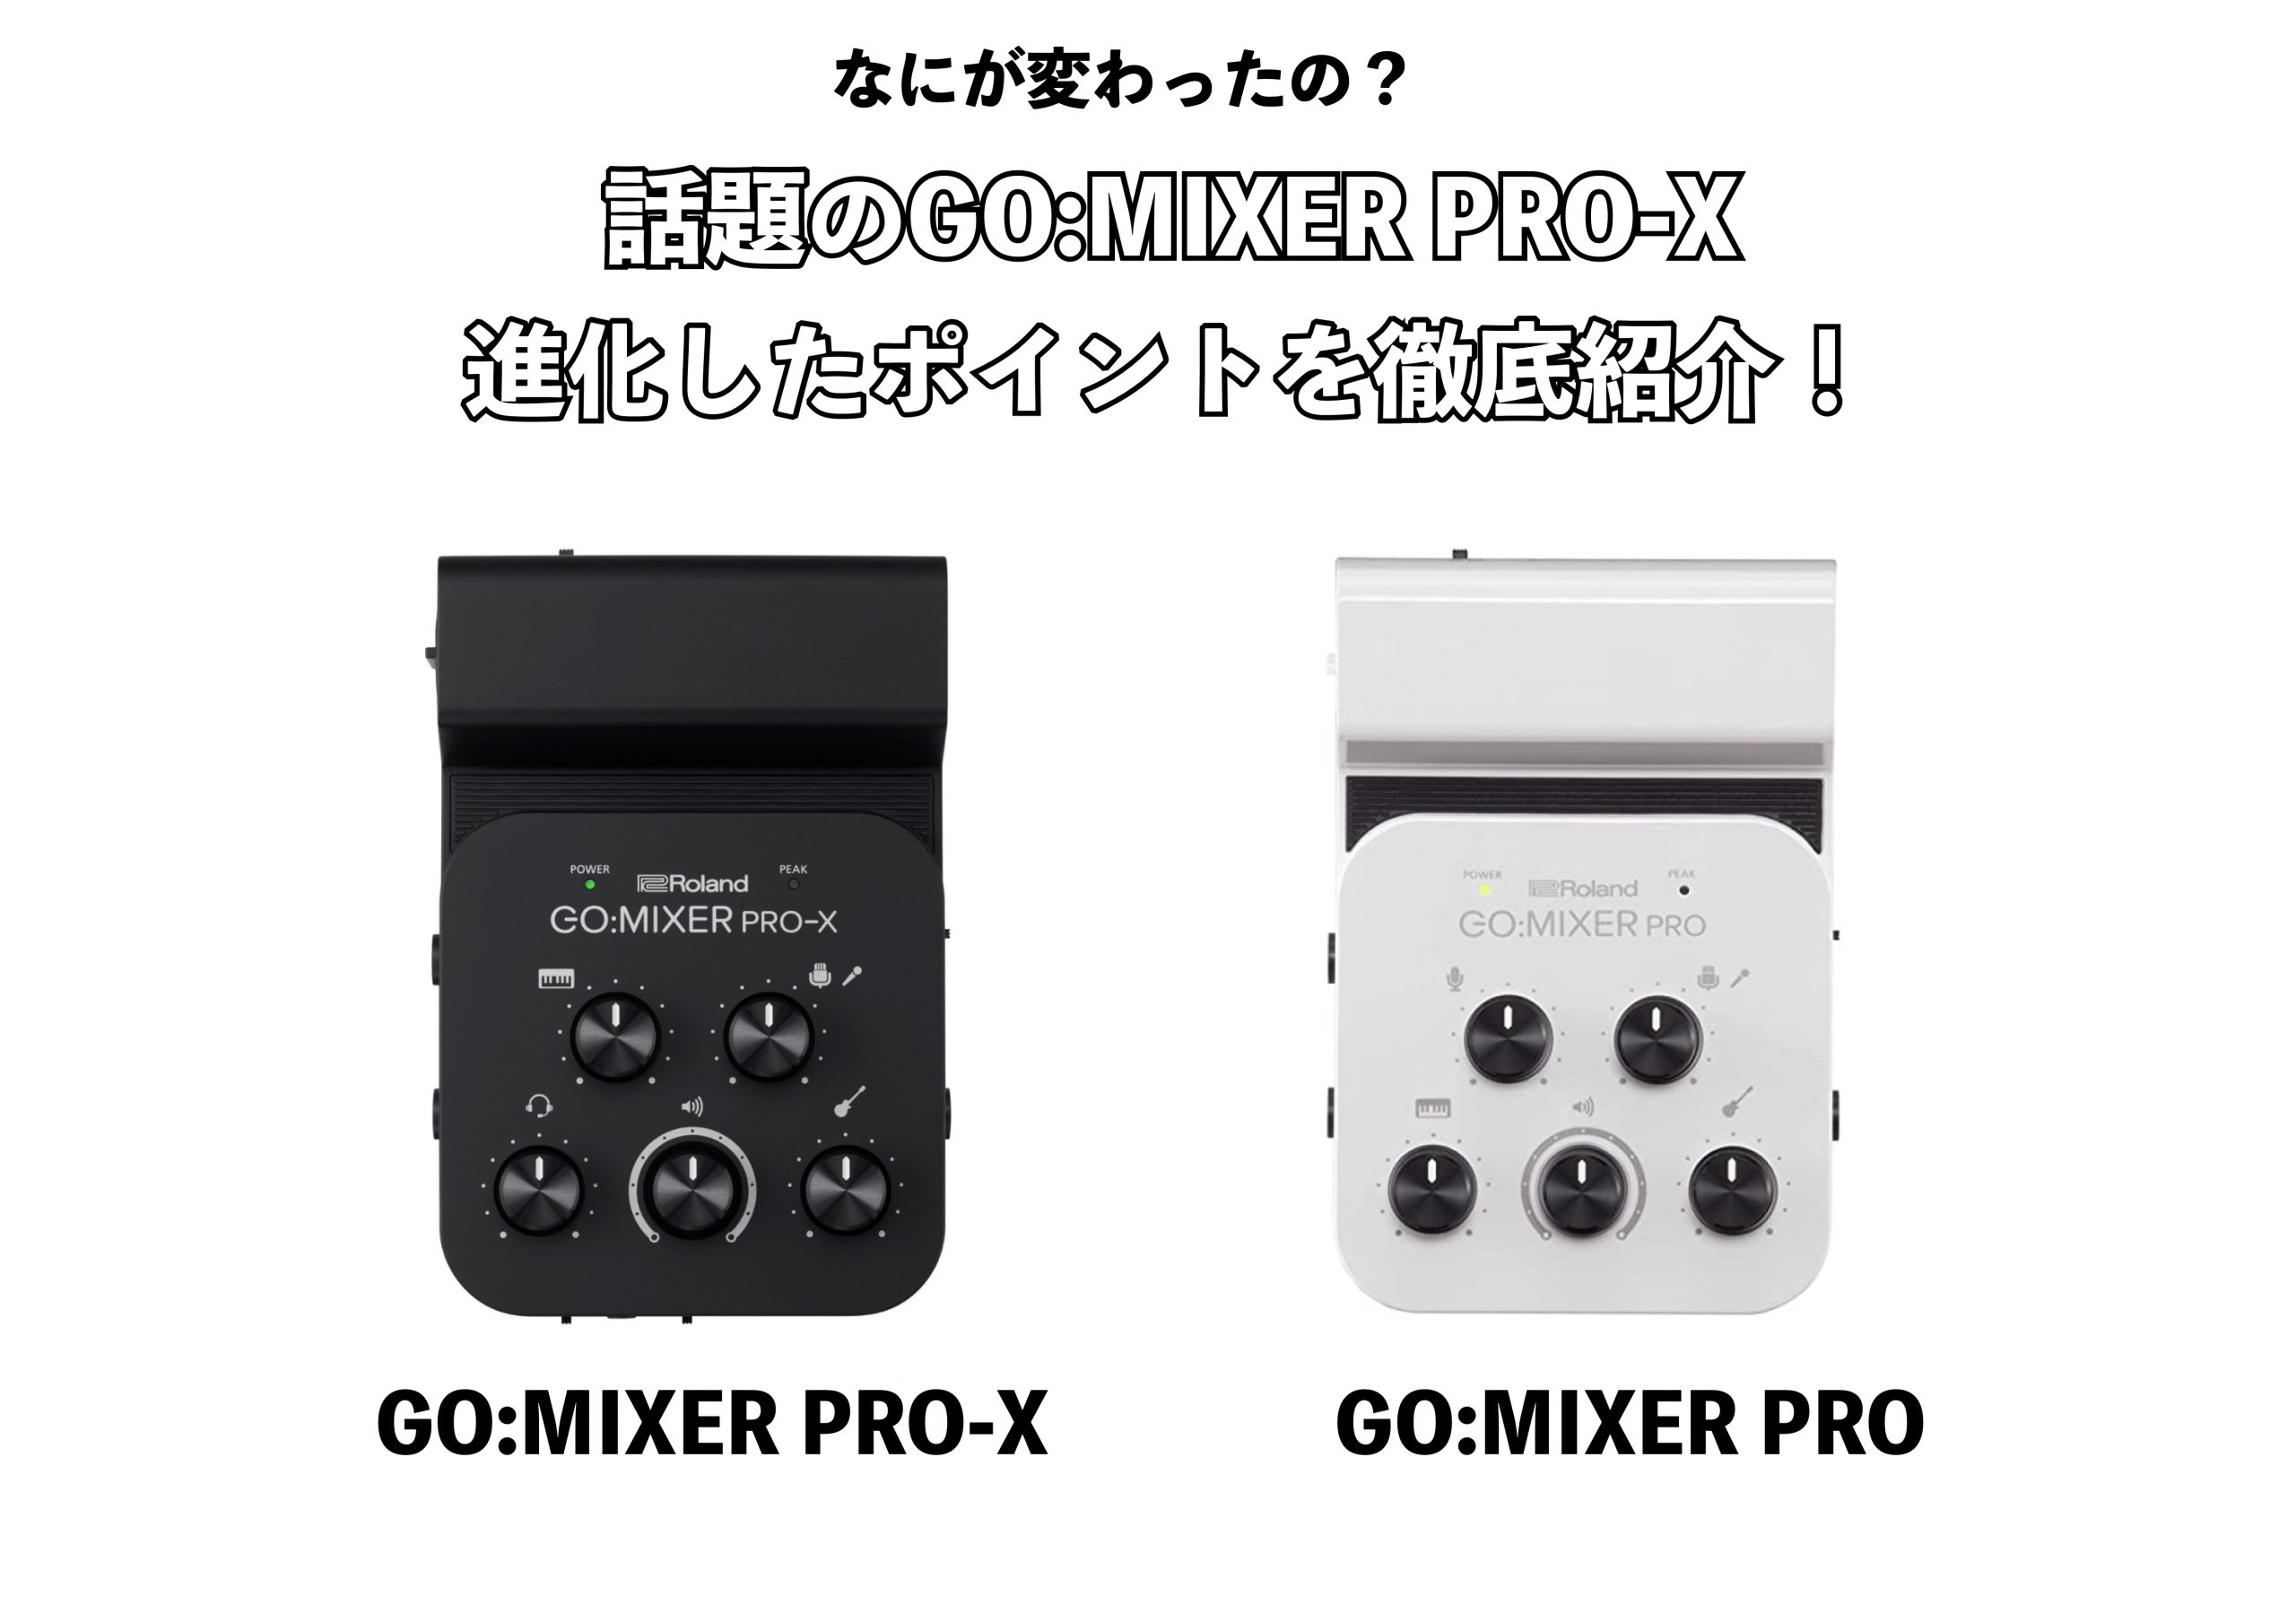 Roland ミキサー GO:MIXER PRO-X